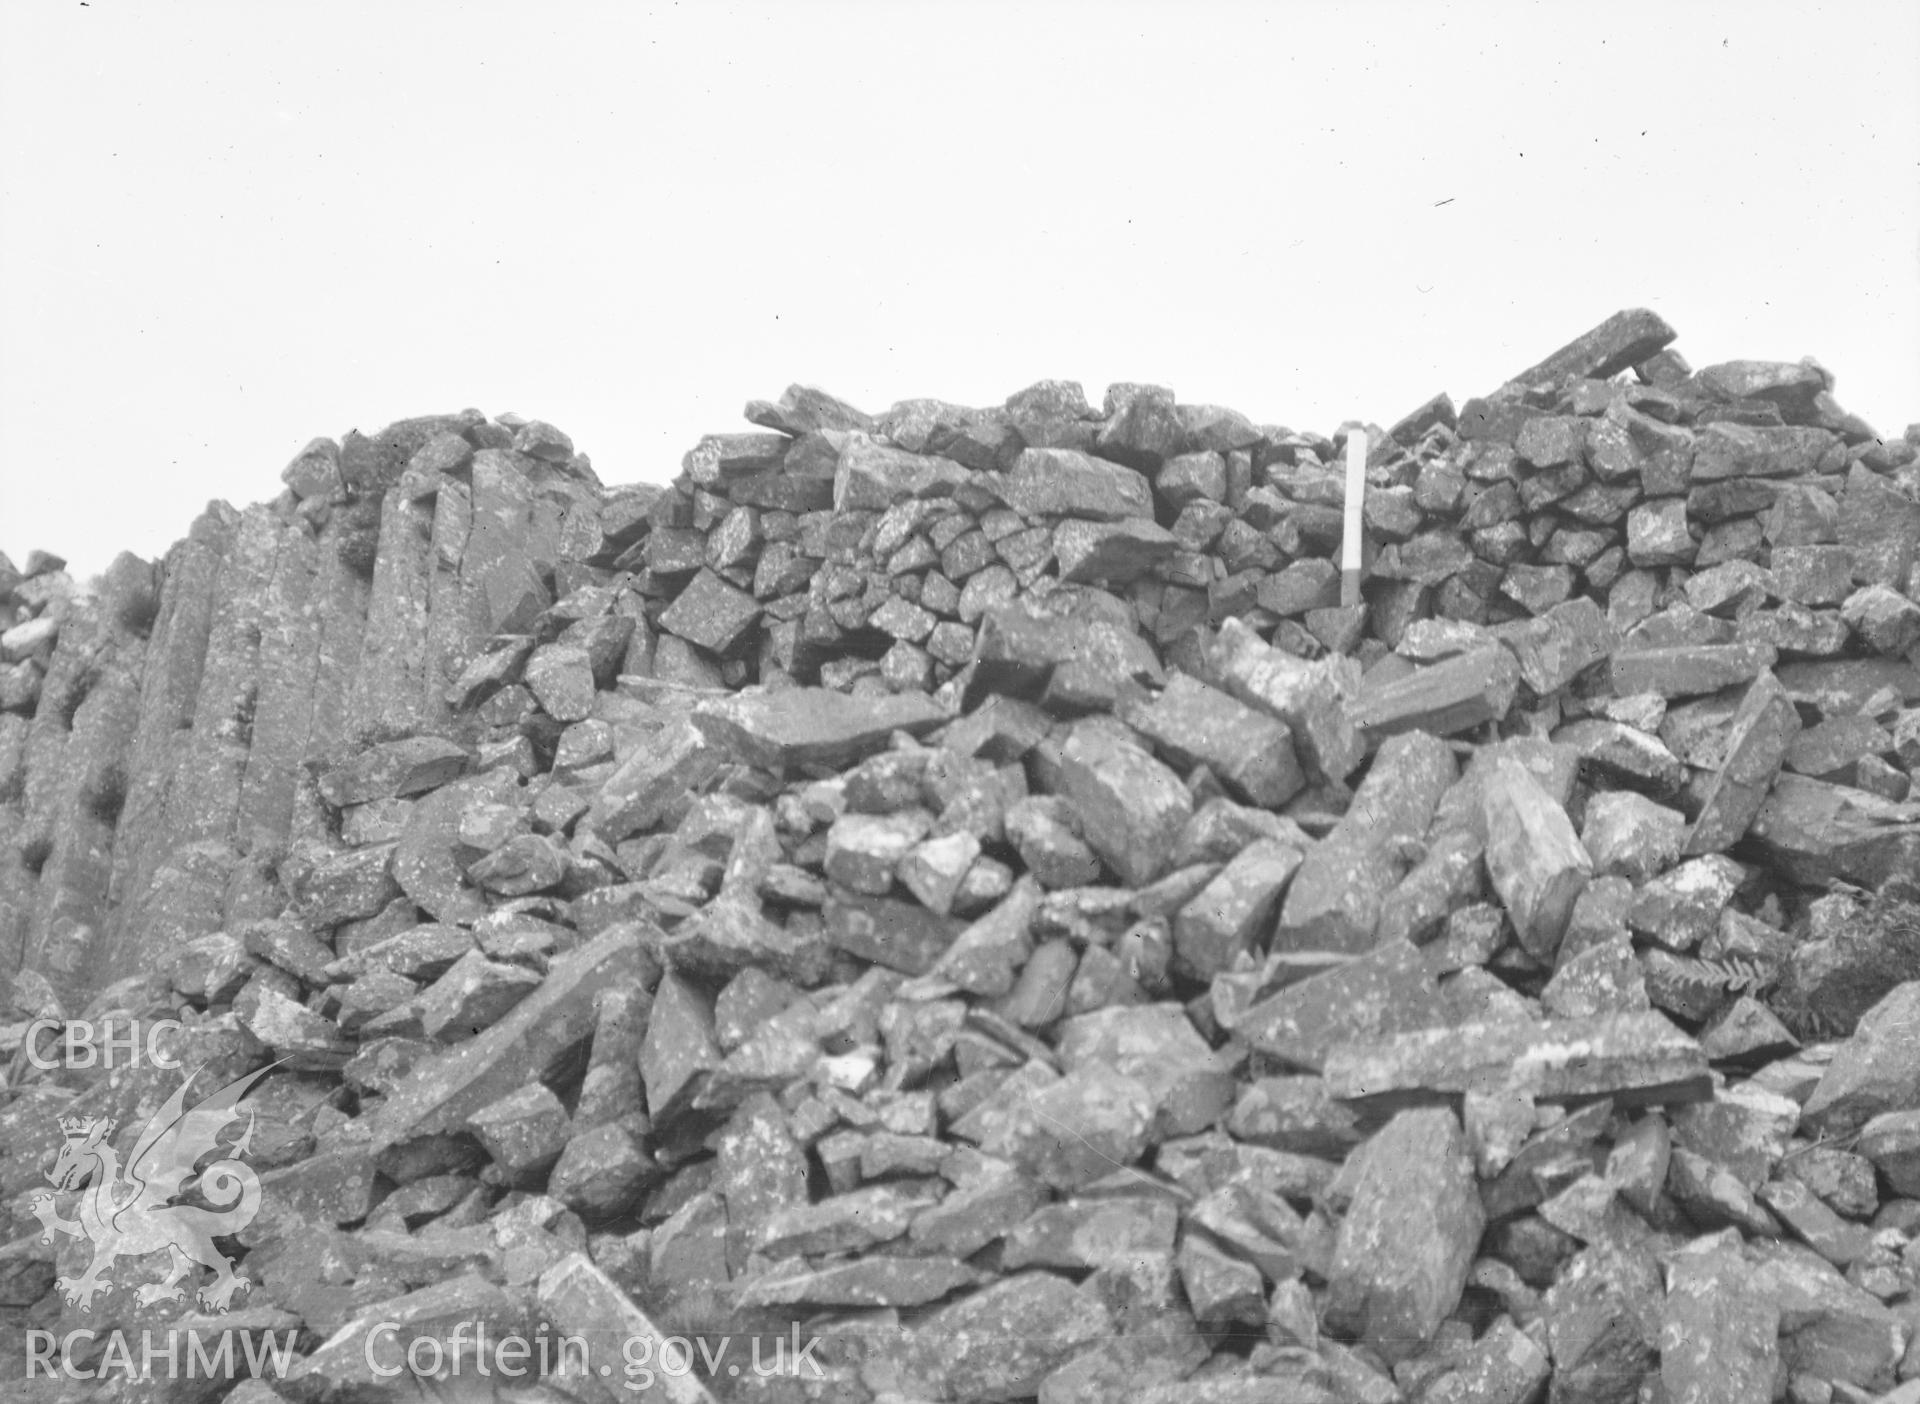 Digital copy of a nitrate negative showing Castell Caerau, Dolbenmaen.